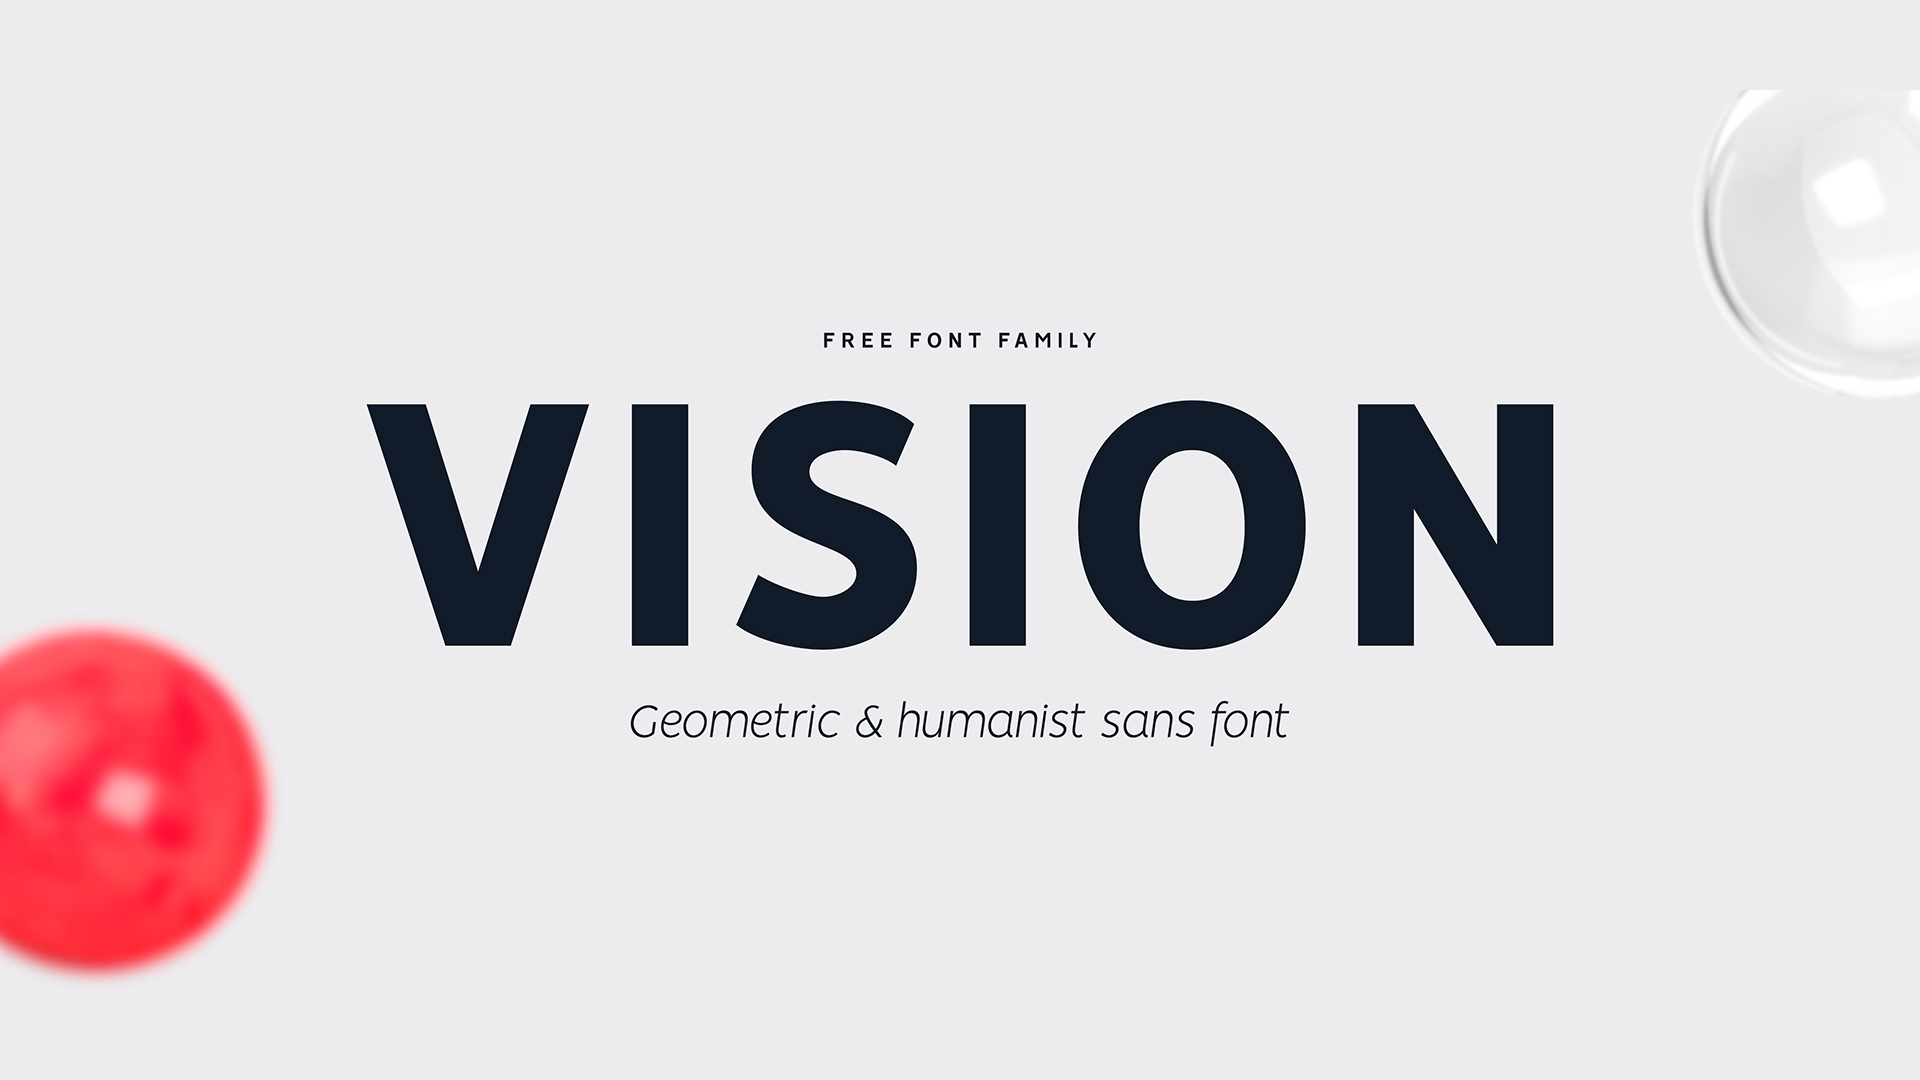 Font Vision